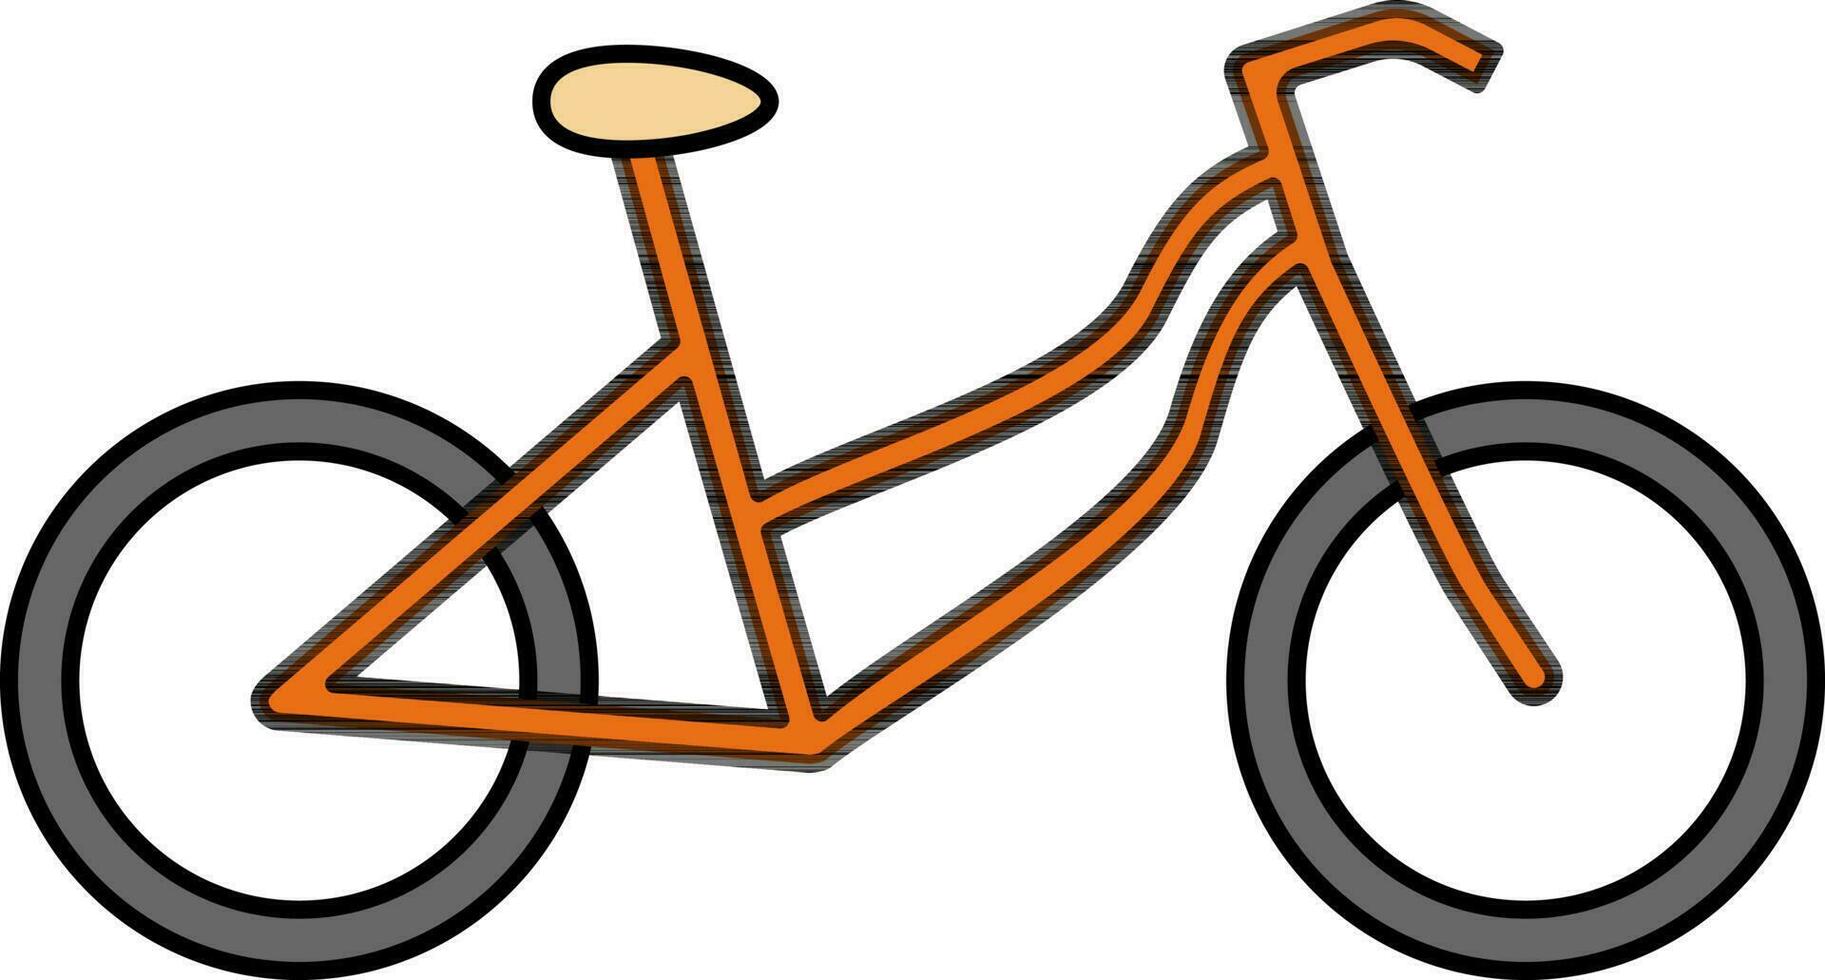 vlak illustratie van fiets. vector